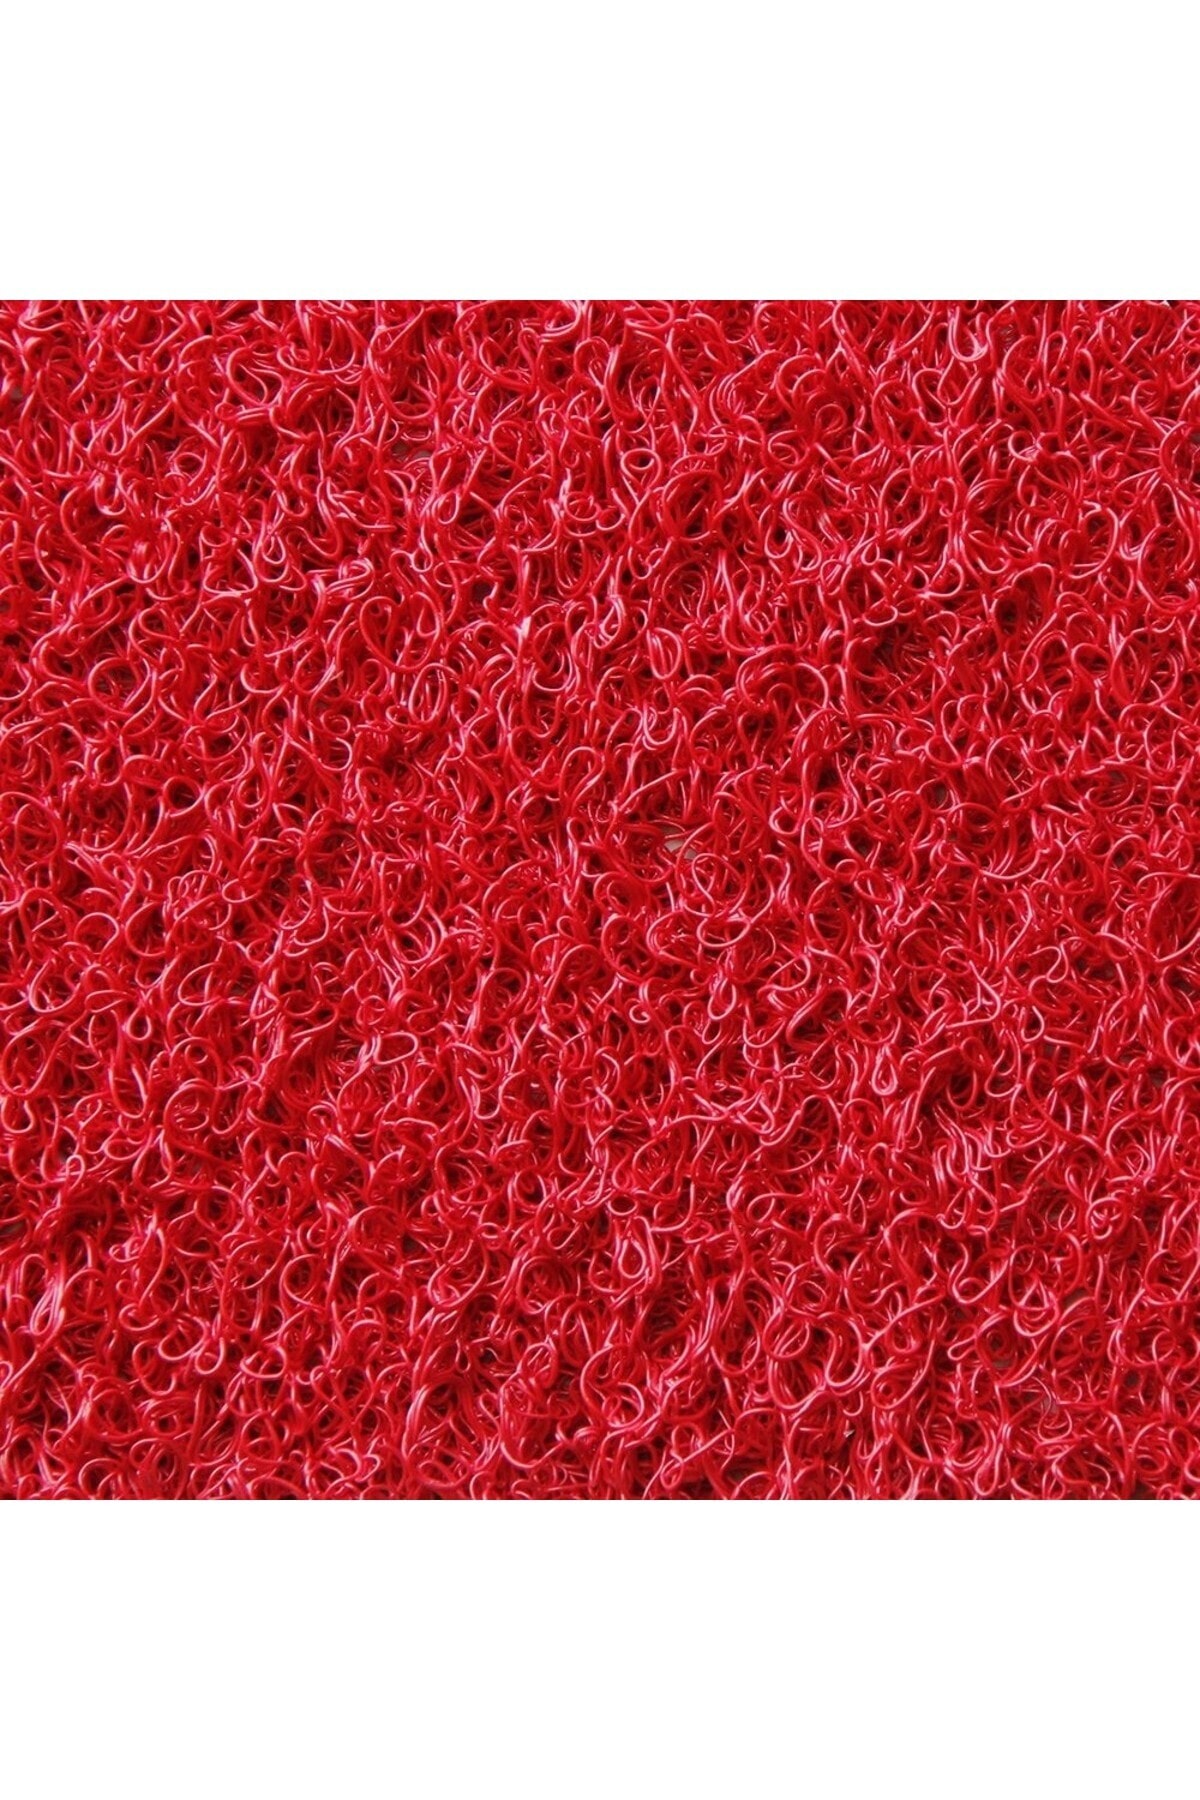 Midas 14 Mm Kıvırcık Kaymaz Yolluk - Paspas (kırmızı)